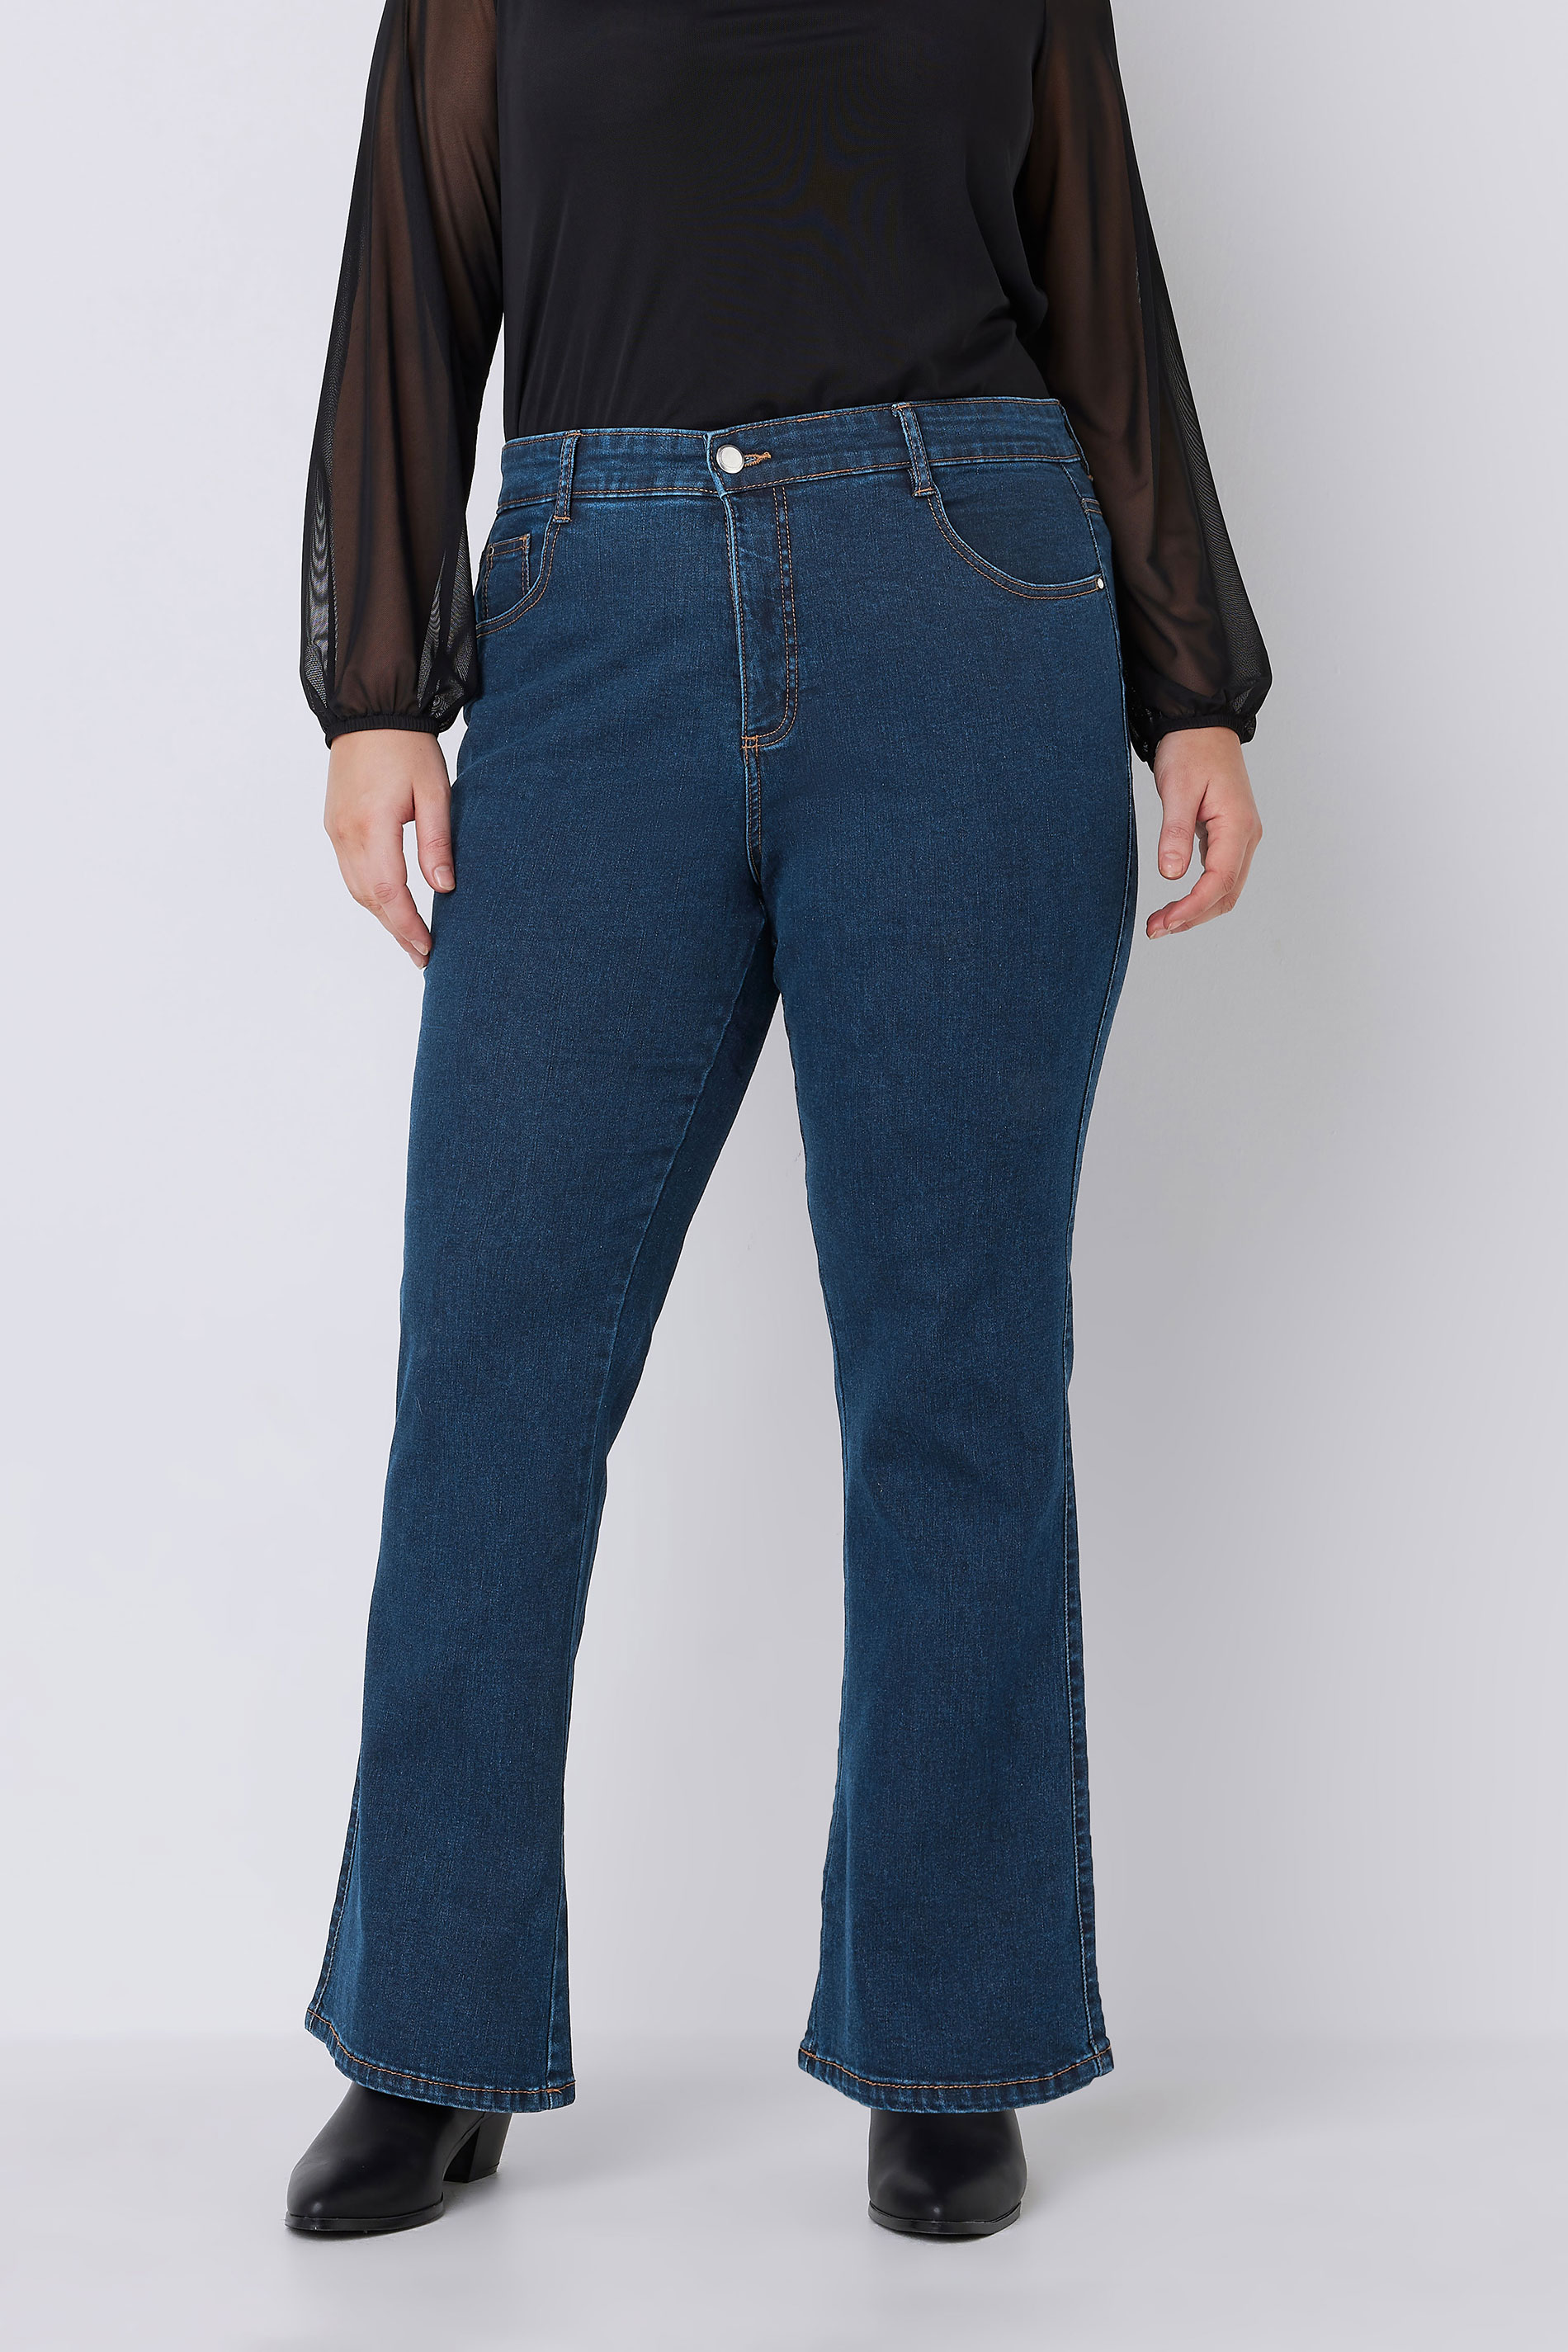 EVANS Plus Size Indigo Blue Bootcut Jeans | Evans 1